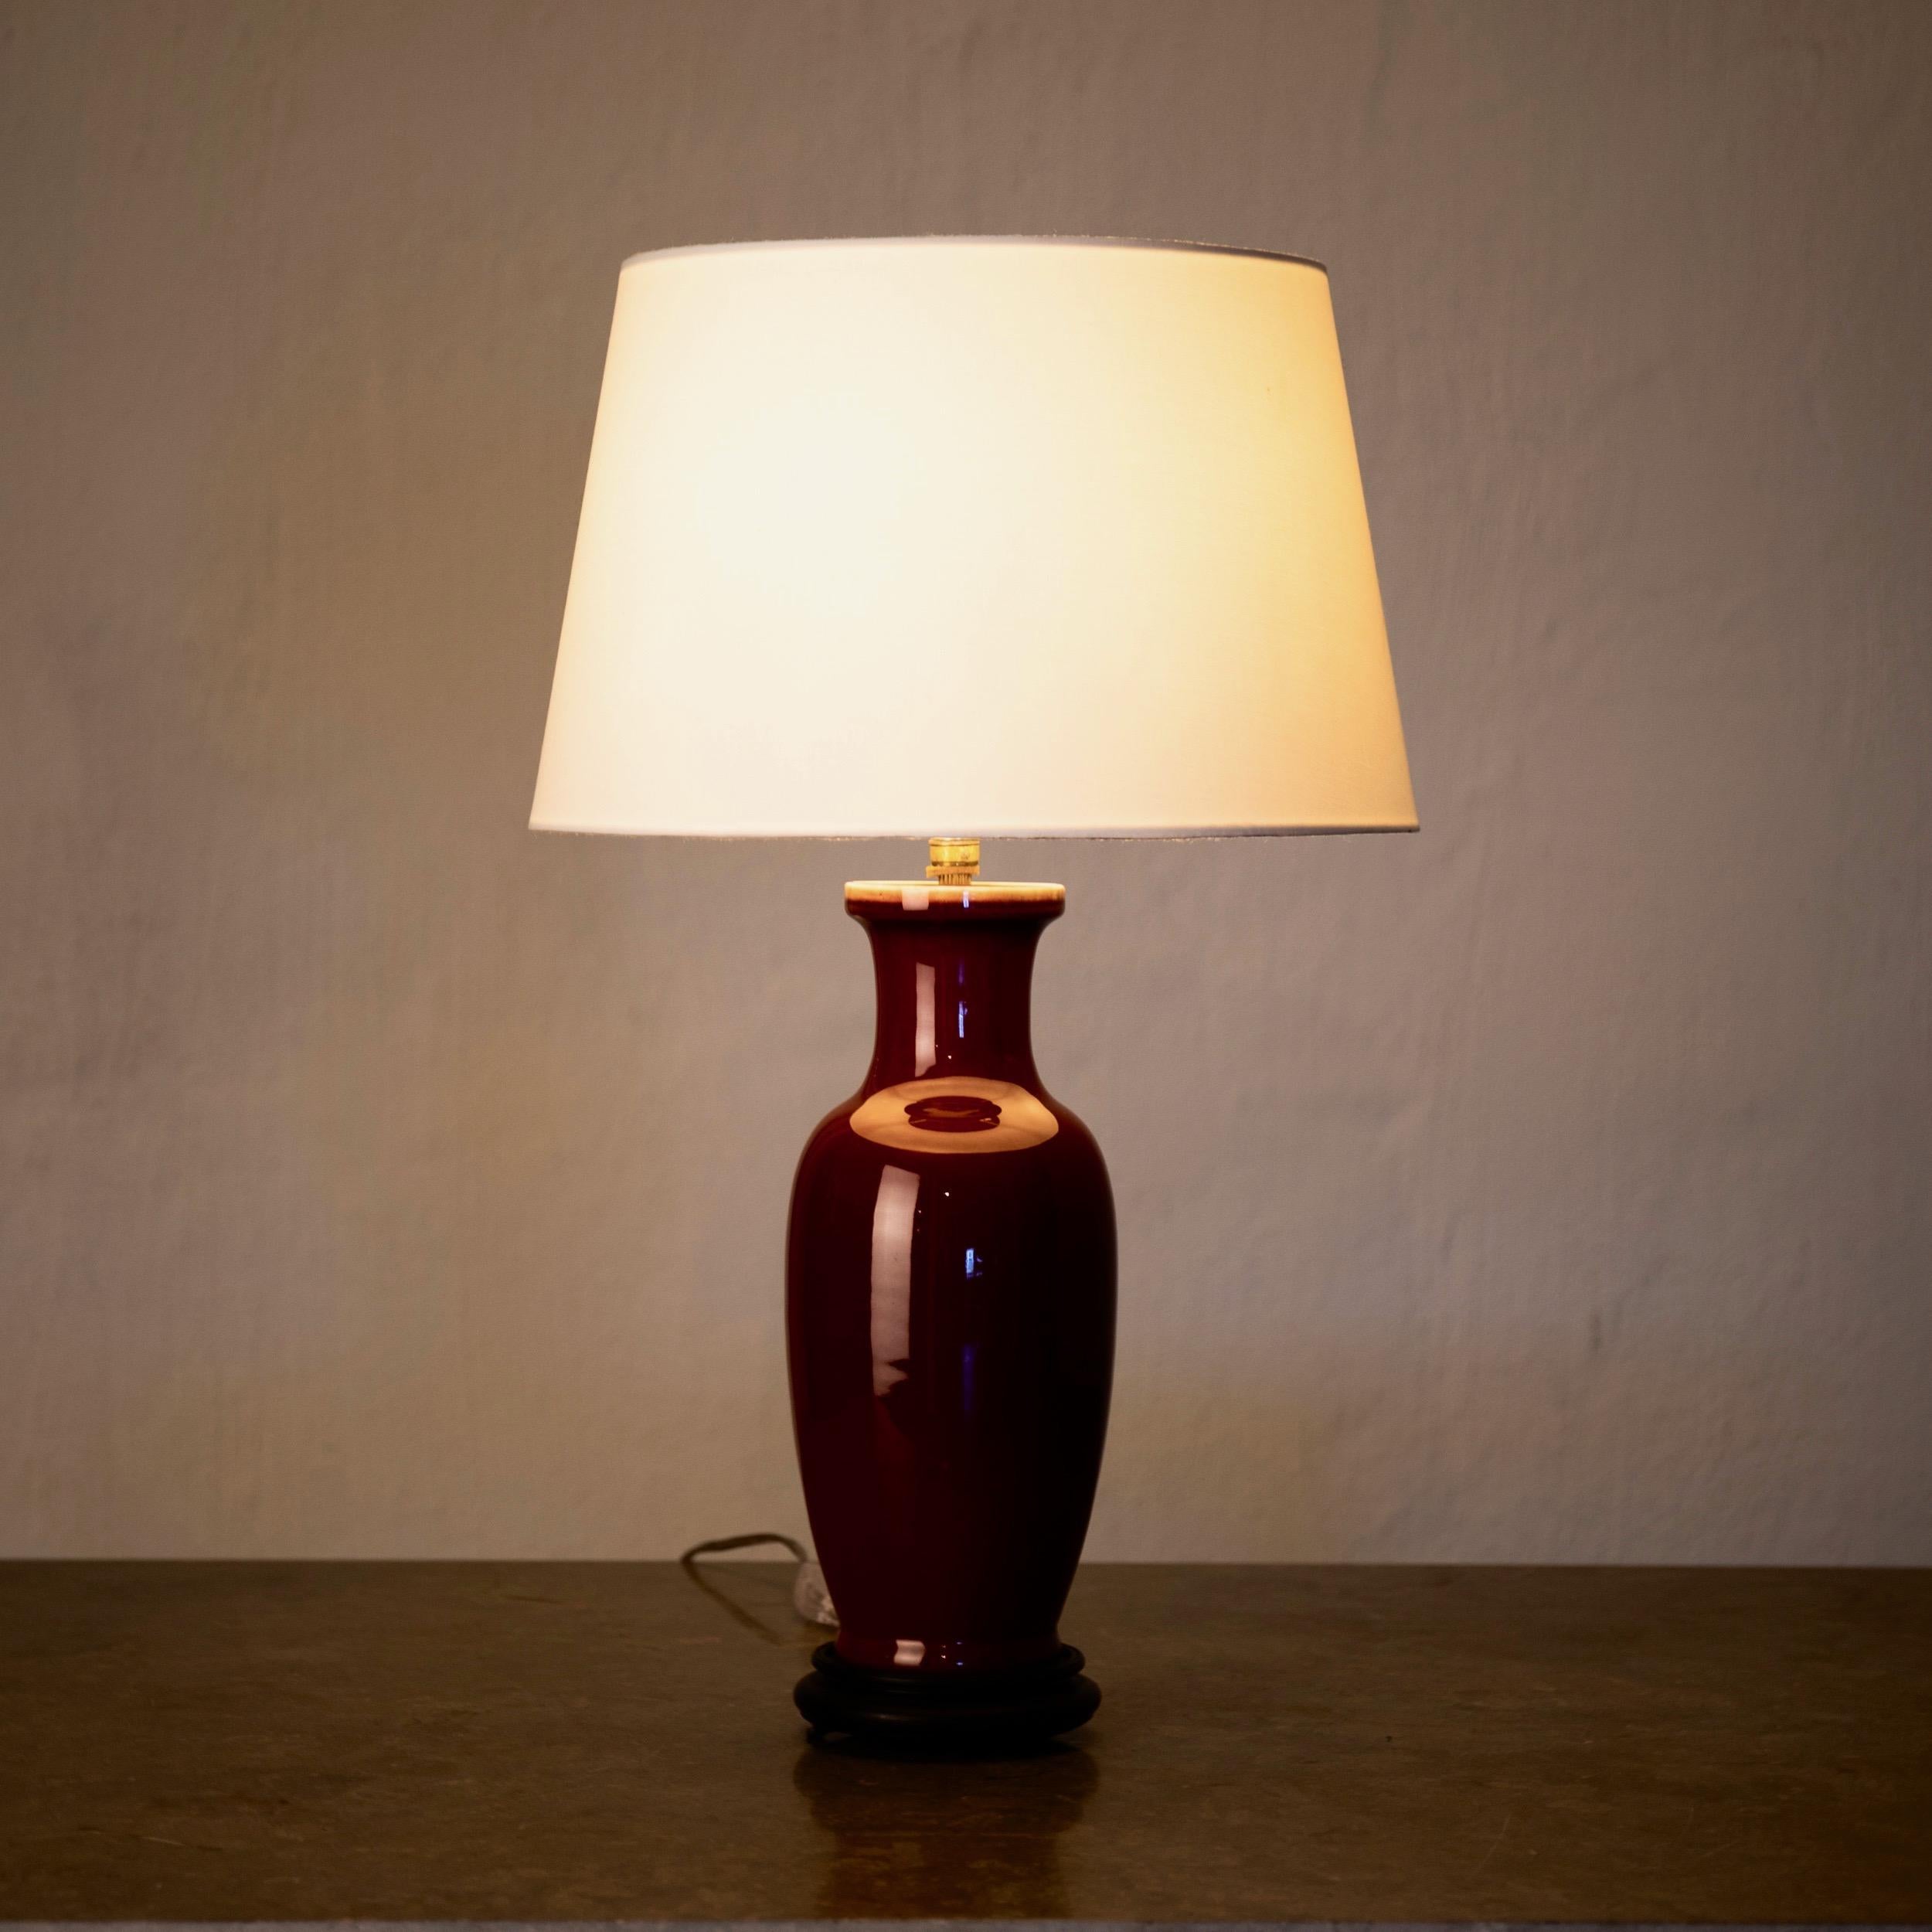 Lampe de table émaillée rouge 19ème siècle, Chine. Une lampe de table fabriquée dans une poterie émaillée rouge profond.
Mesures : H avec abat-jour : 22.5